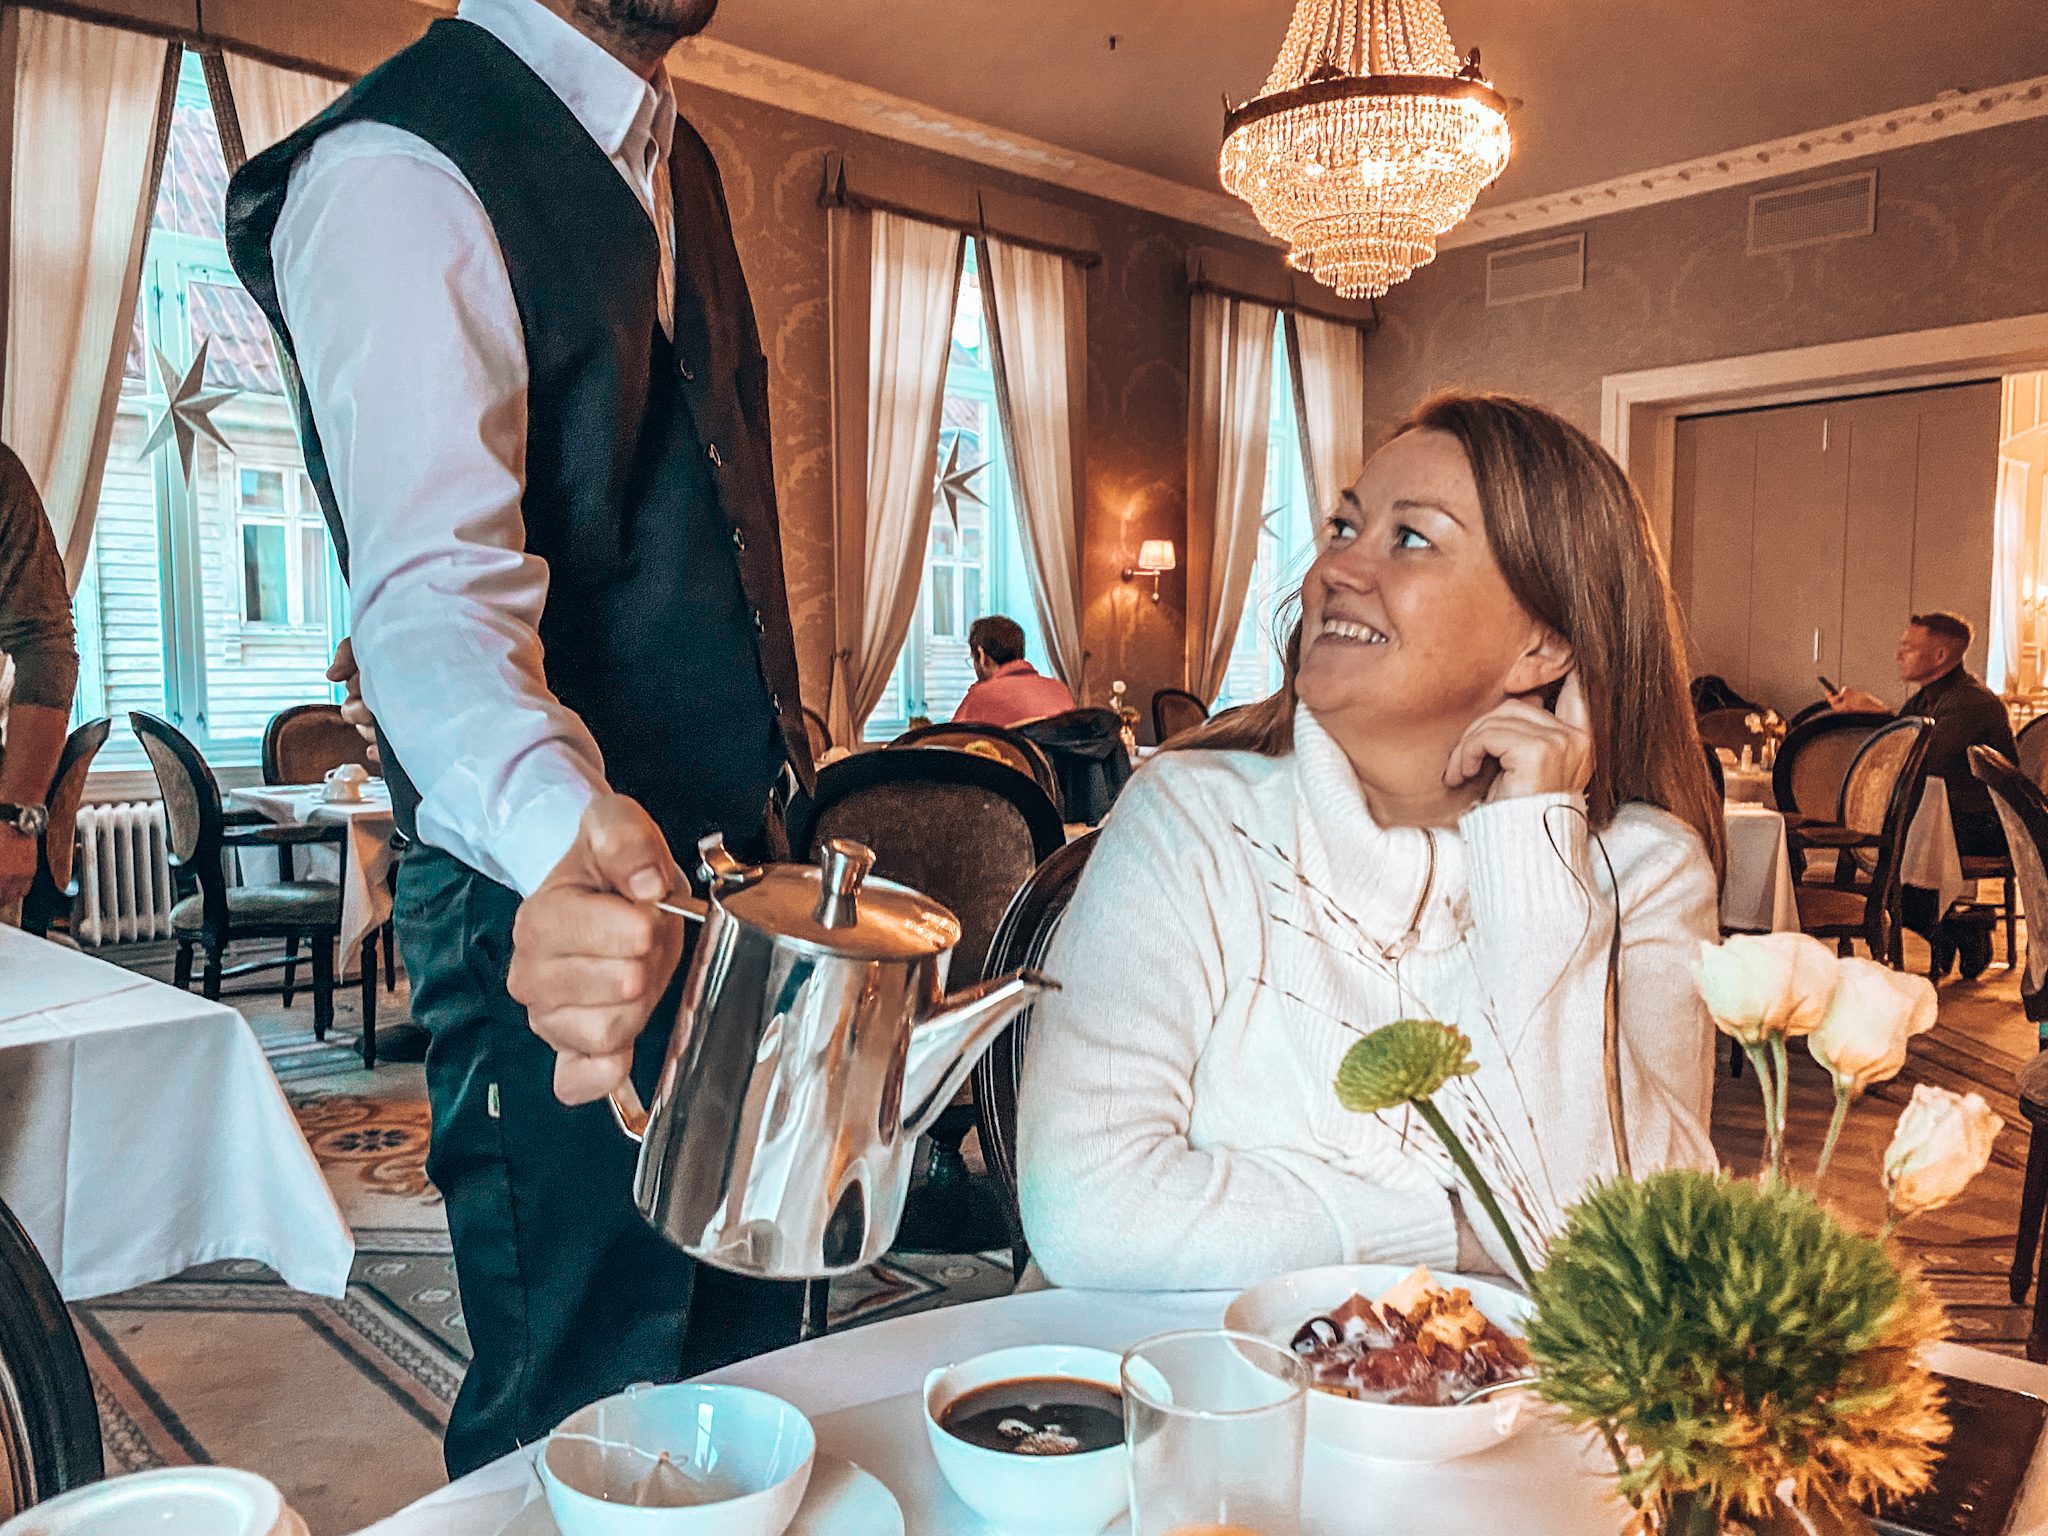 Hotellfrokoster på Jæren, kvinne serveres kaffe fra sølvkanne av kelner i pent antrekk.